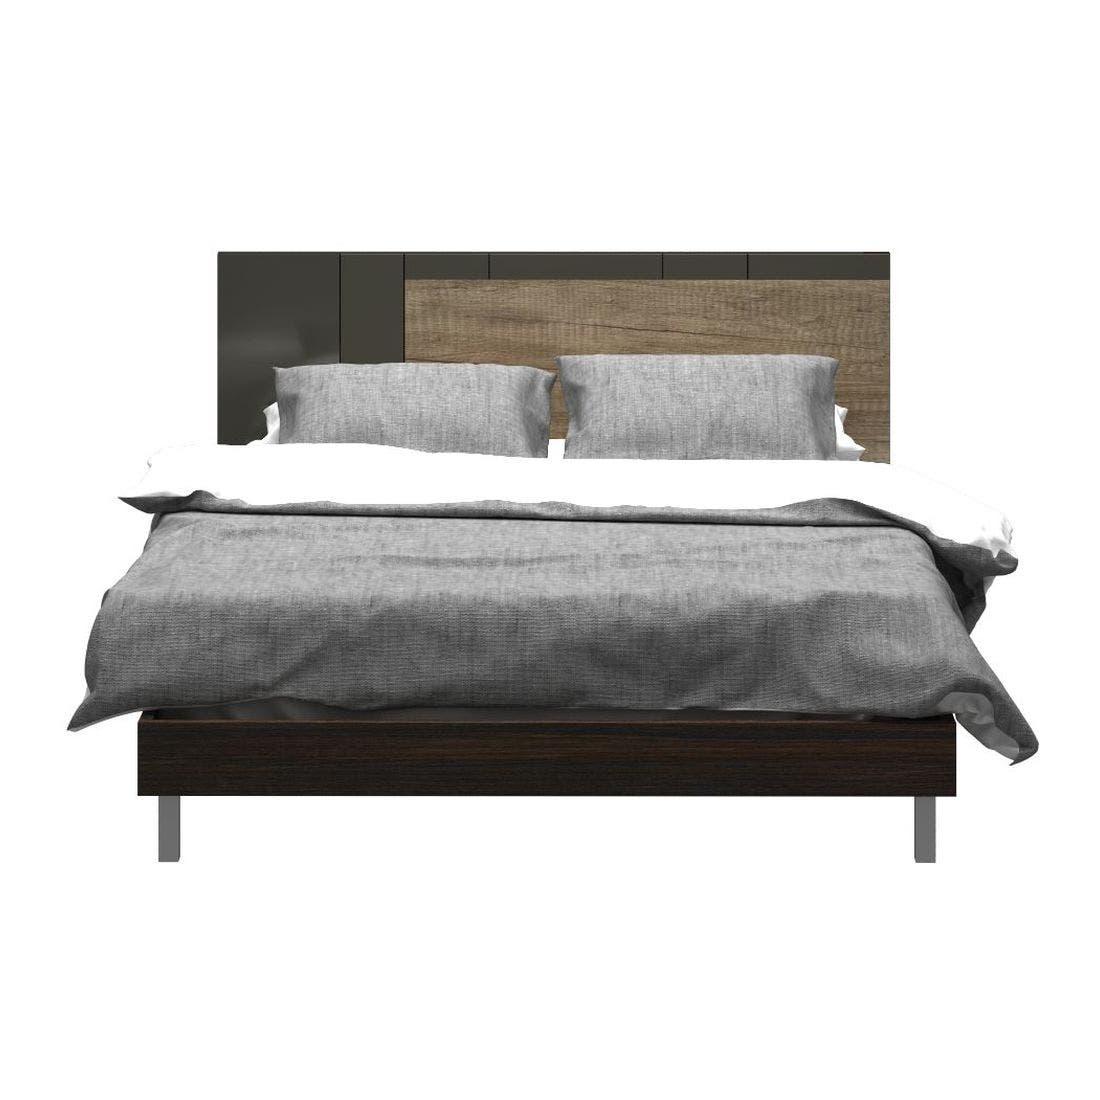 ชุดห้องนอน เตียง รุ่น Leno สีสีเข้มลายไม้ธรรมชาติ-SB Design Square